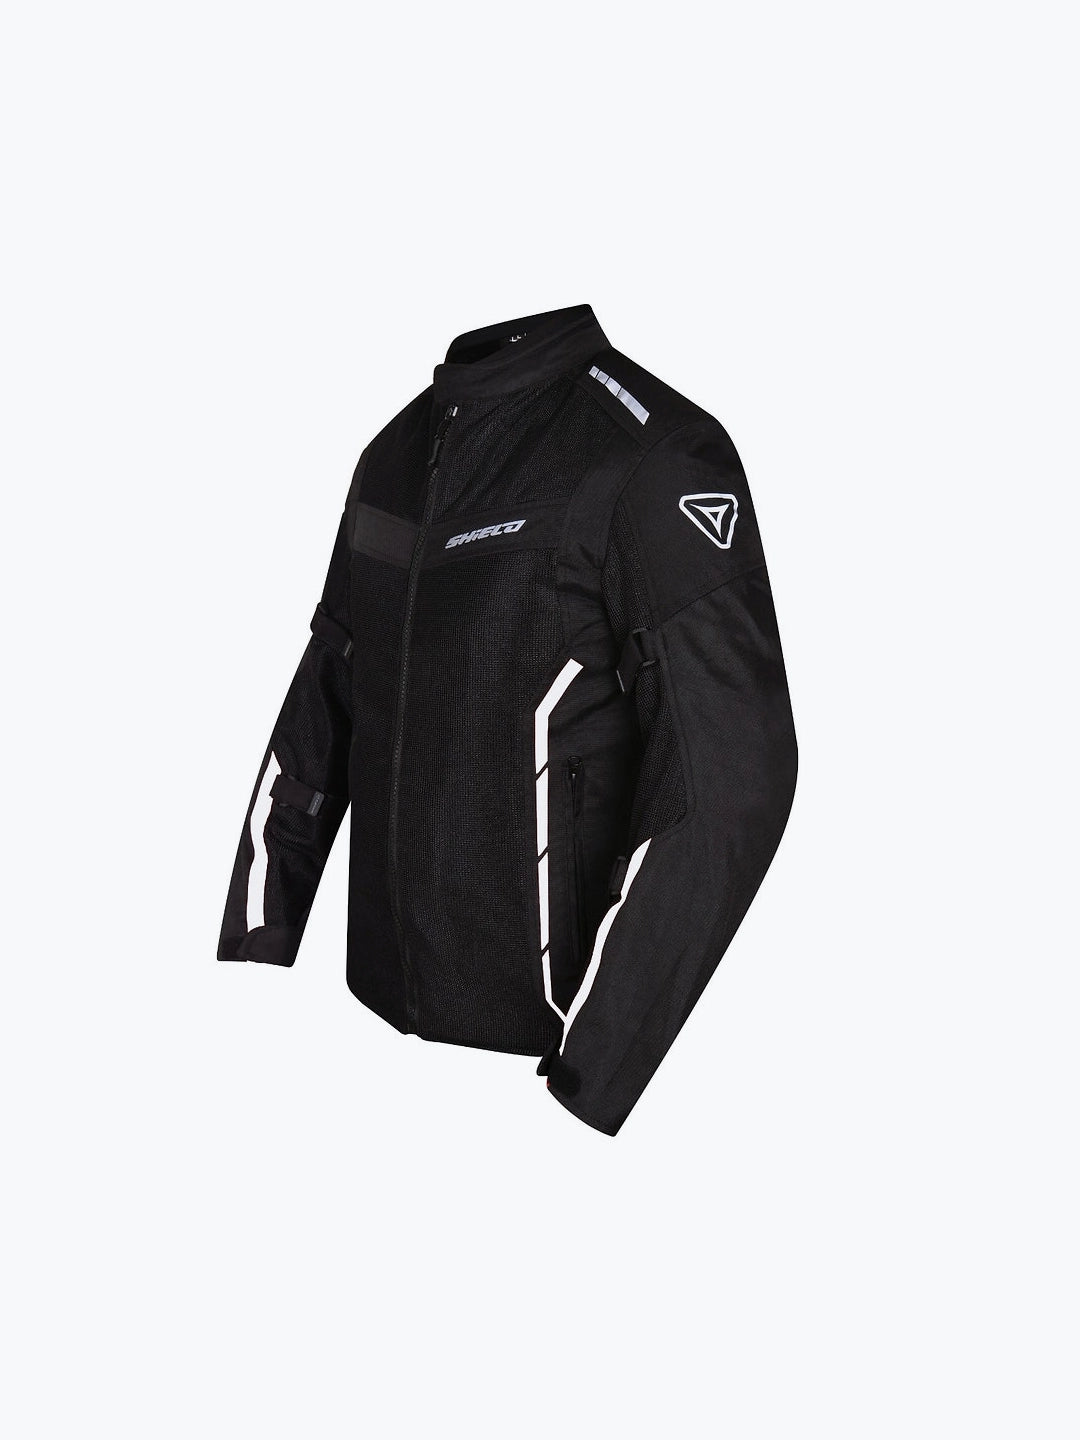 Shield Airgt Jacket Black White